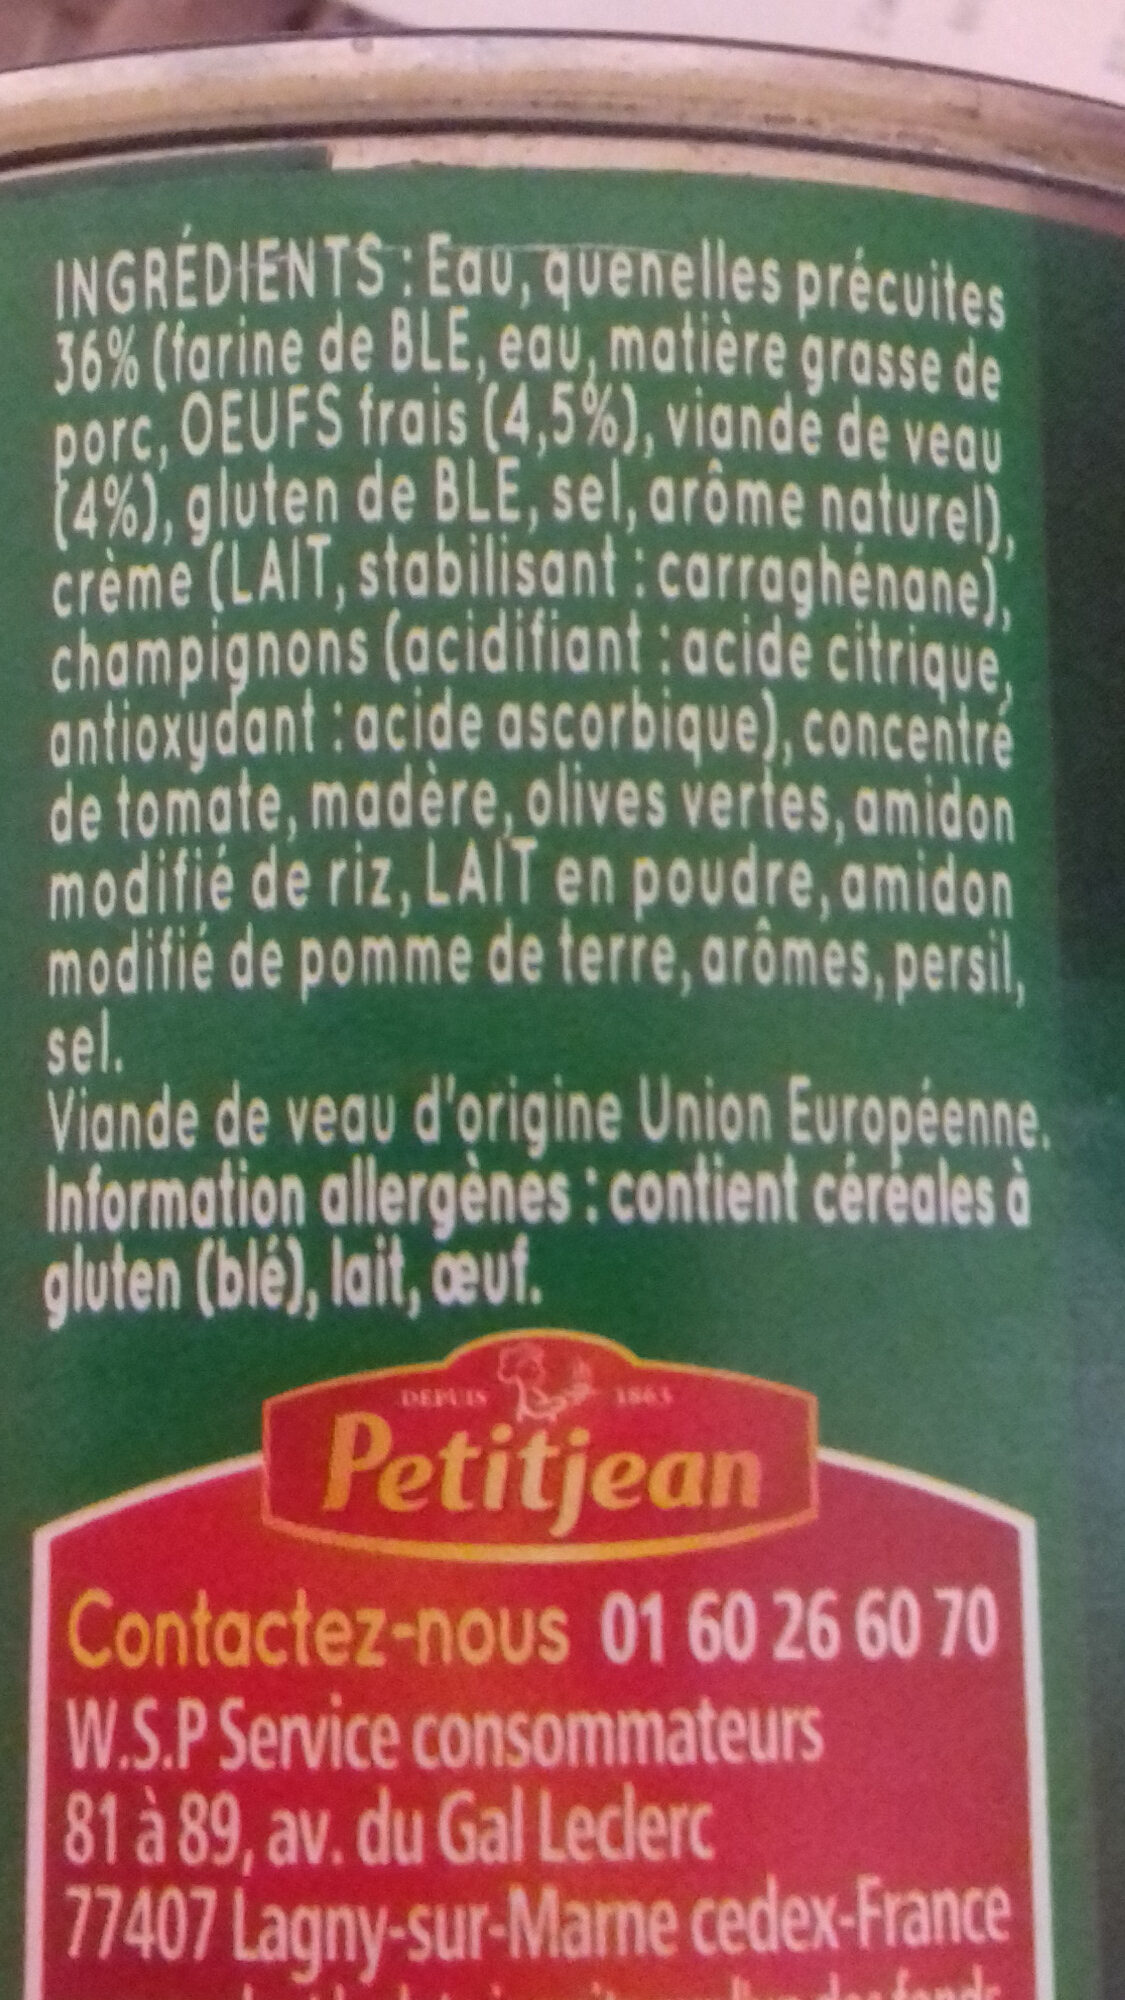 6 quenelles de veau - Ingredienti - fr